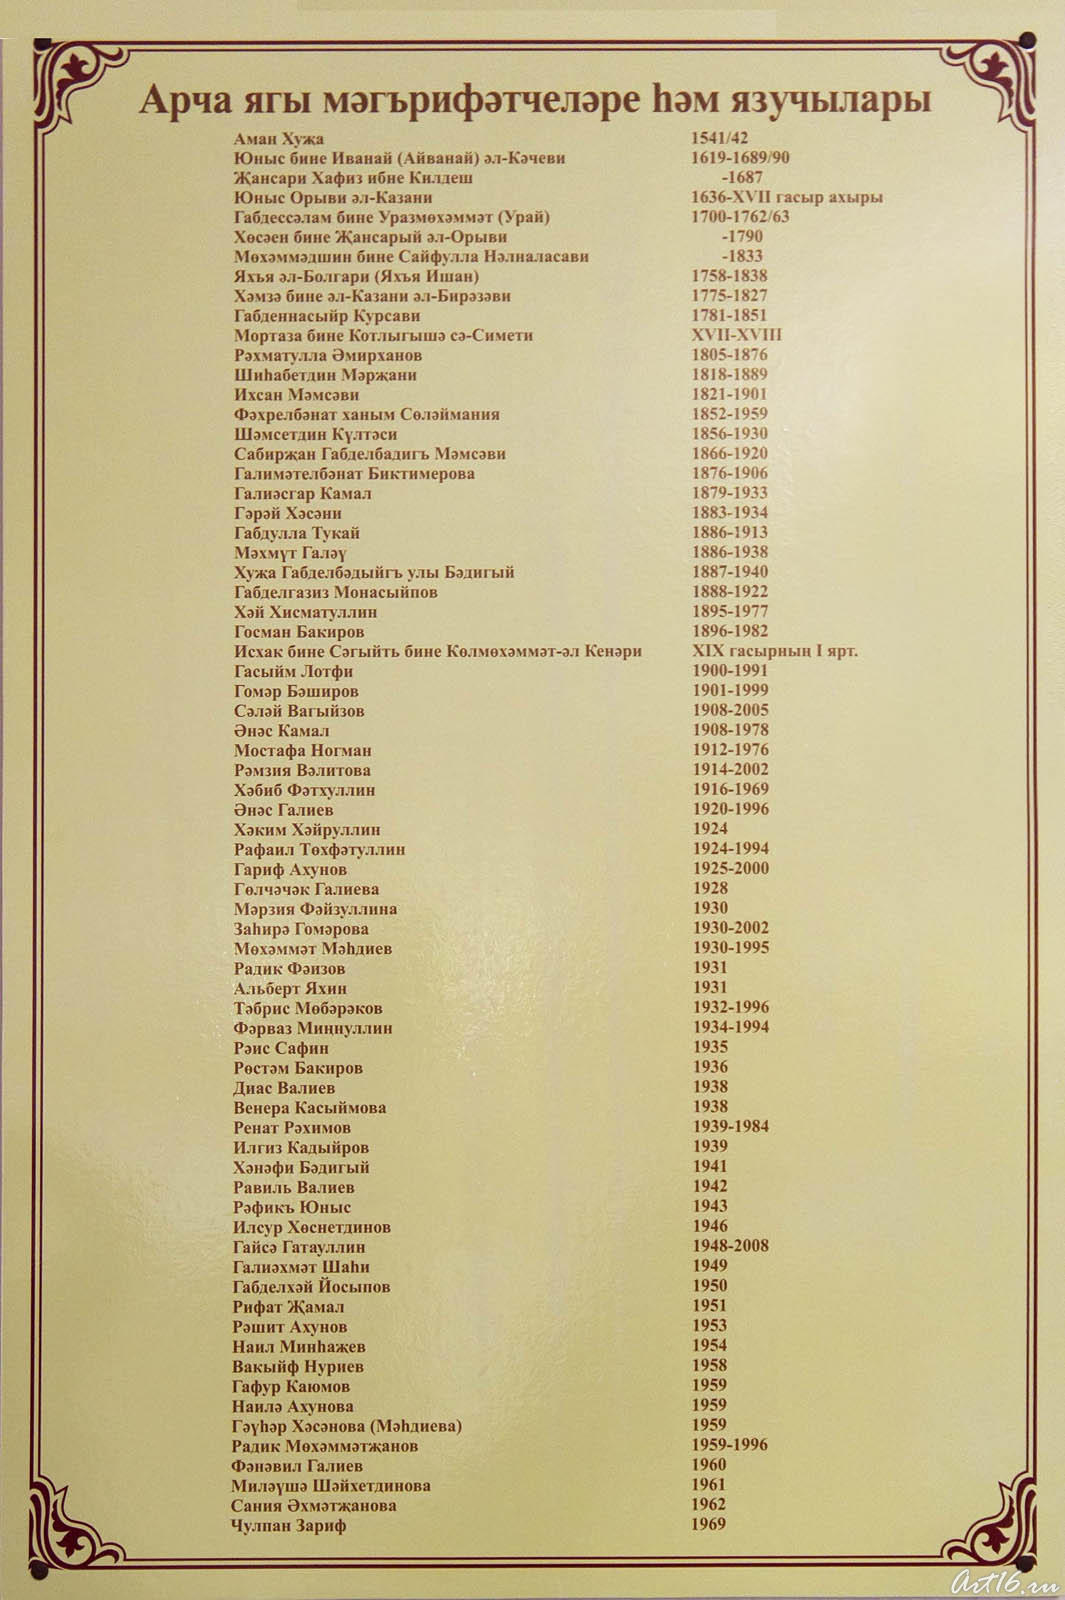 Список просветителей и писателей Арского района на татарском языке::Г.Ахунов, Арск